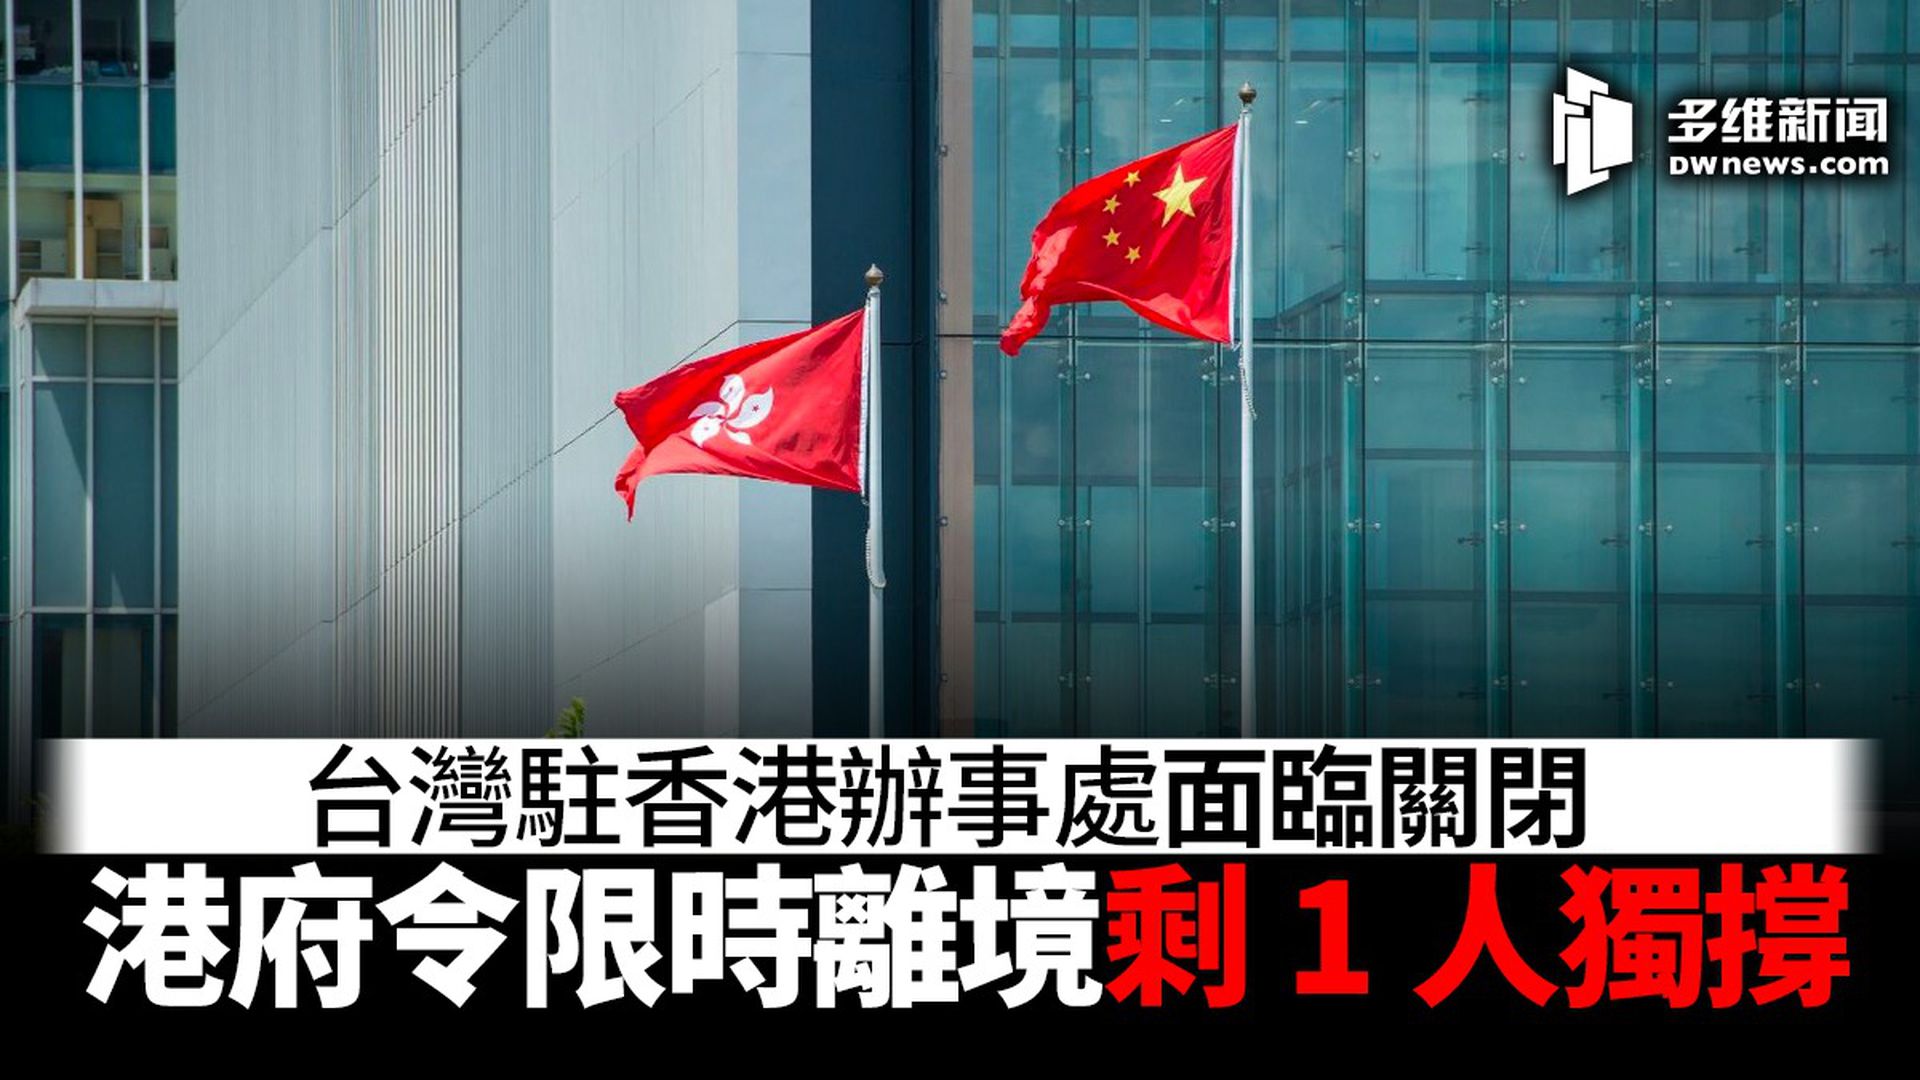 台湾驻港办事处面临关闭港府要求驻员限时离境 多维新闻 台湾